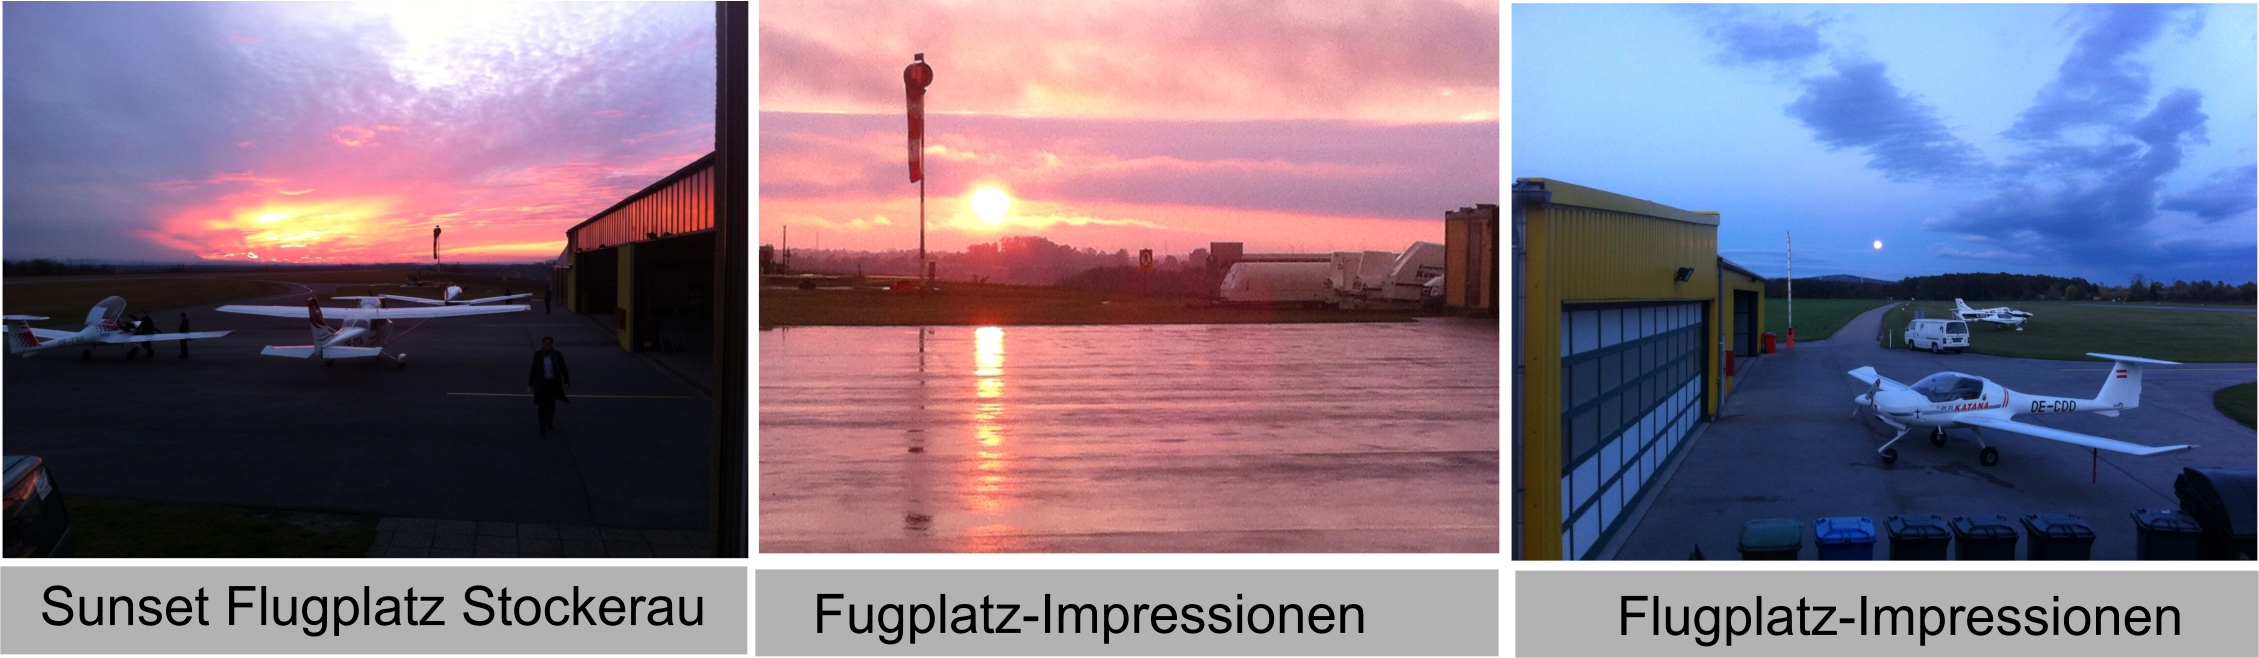 Flugplatz Sunset Impressionen